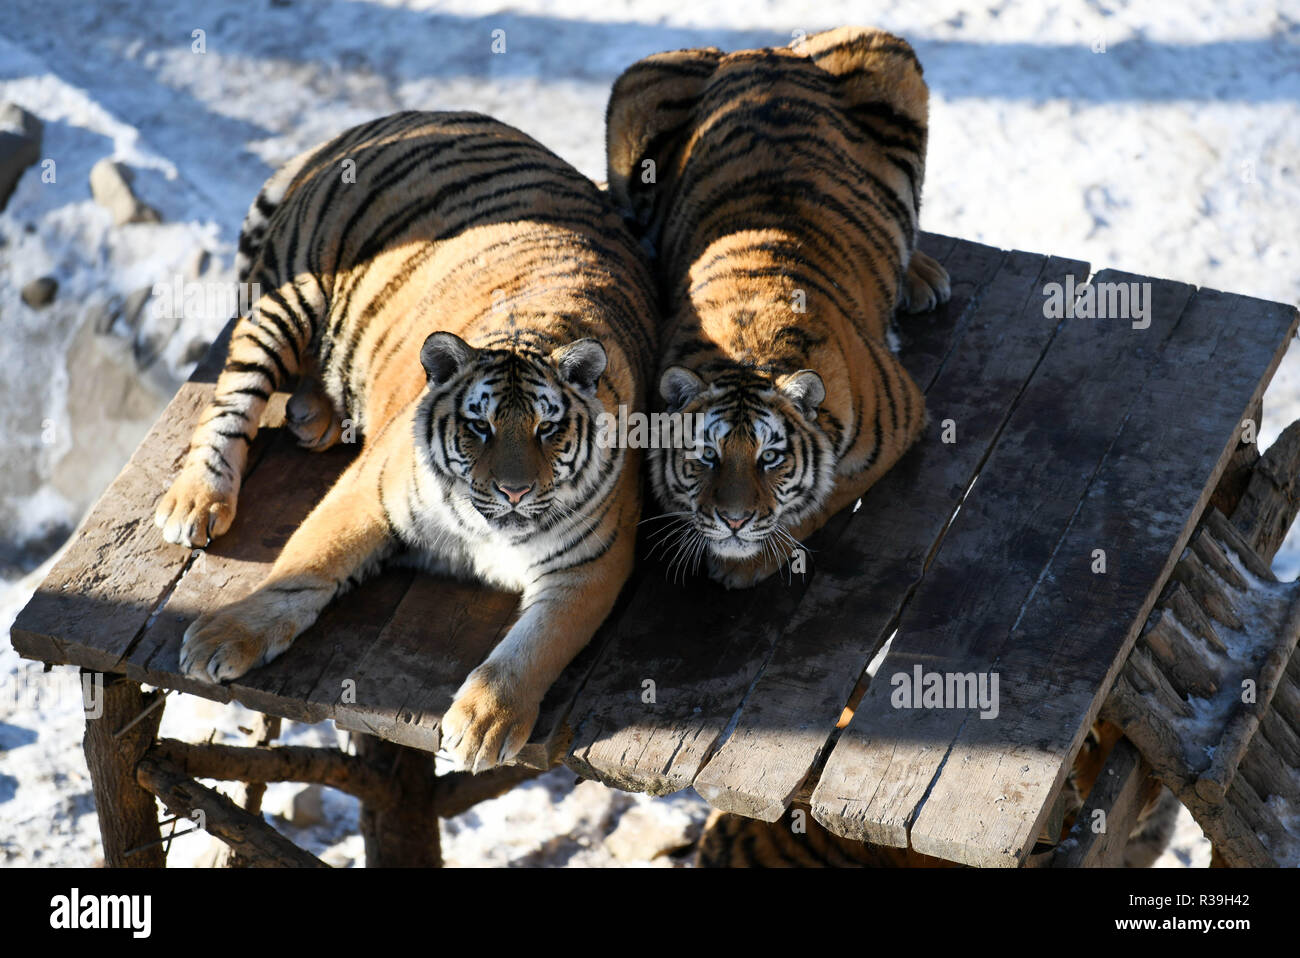 Harbin, China's Heilongjiang Province. 21st Nov, 2018. Siberian tigers play at the China Hengdaohezi Feline Breeding Center in Hailin City, northeast China's Heilongjiang Province, Nov. 21, 2018. Credit: Wang Jianwei/Xinhua/Alamy Live News Stock Photo